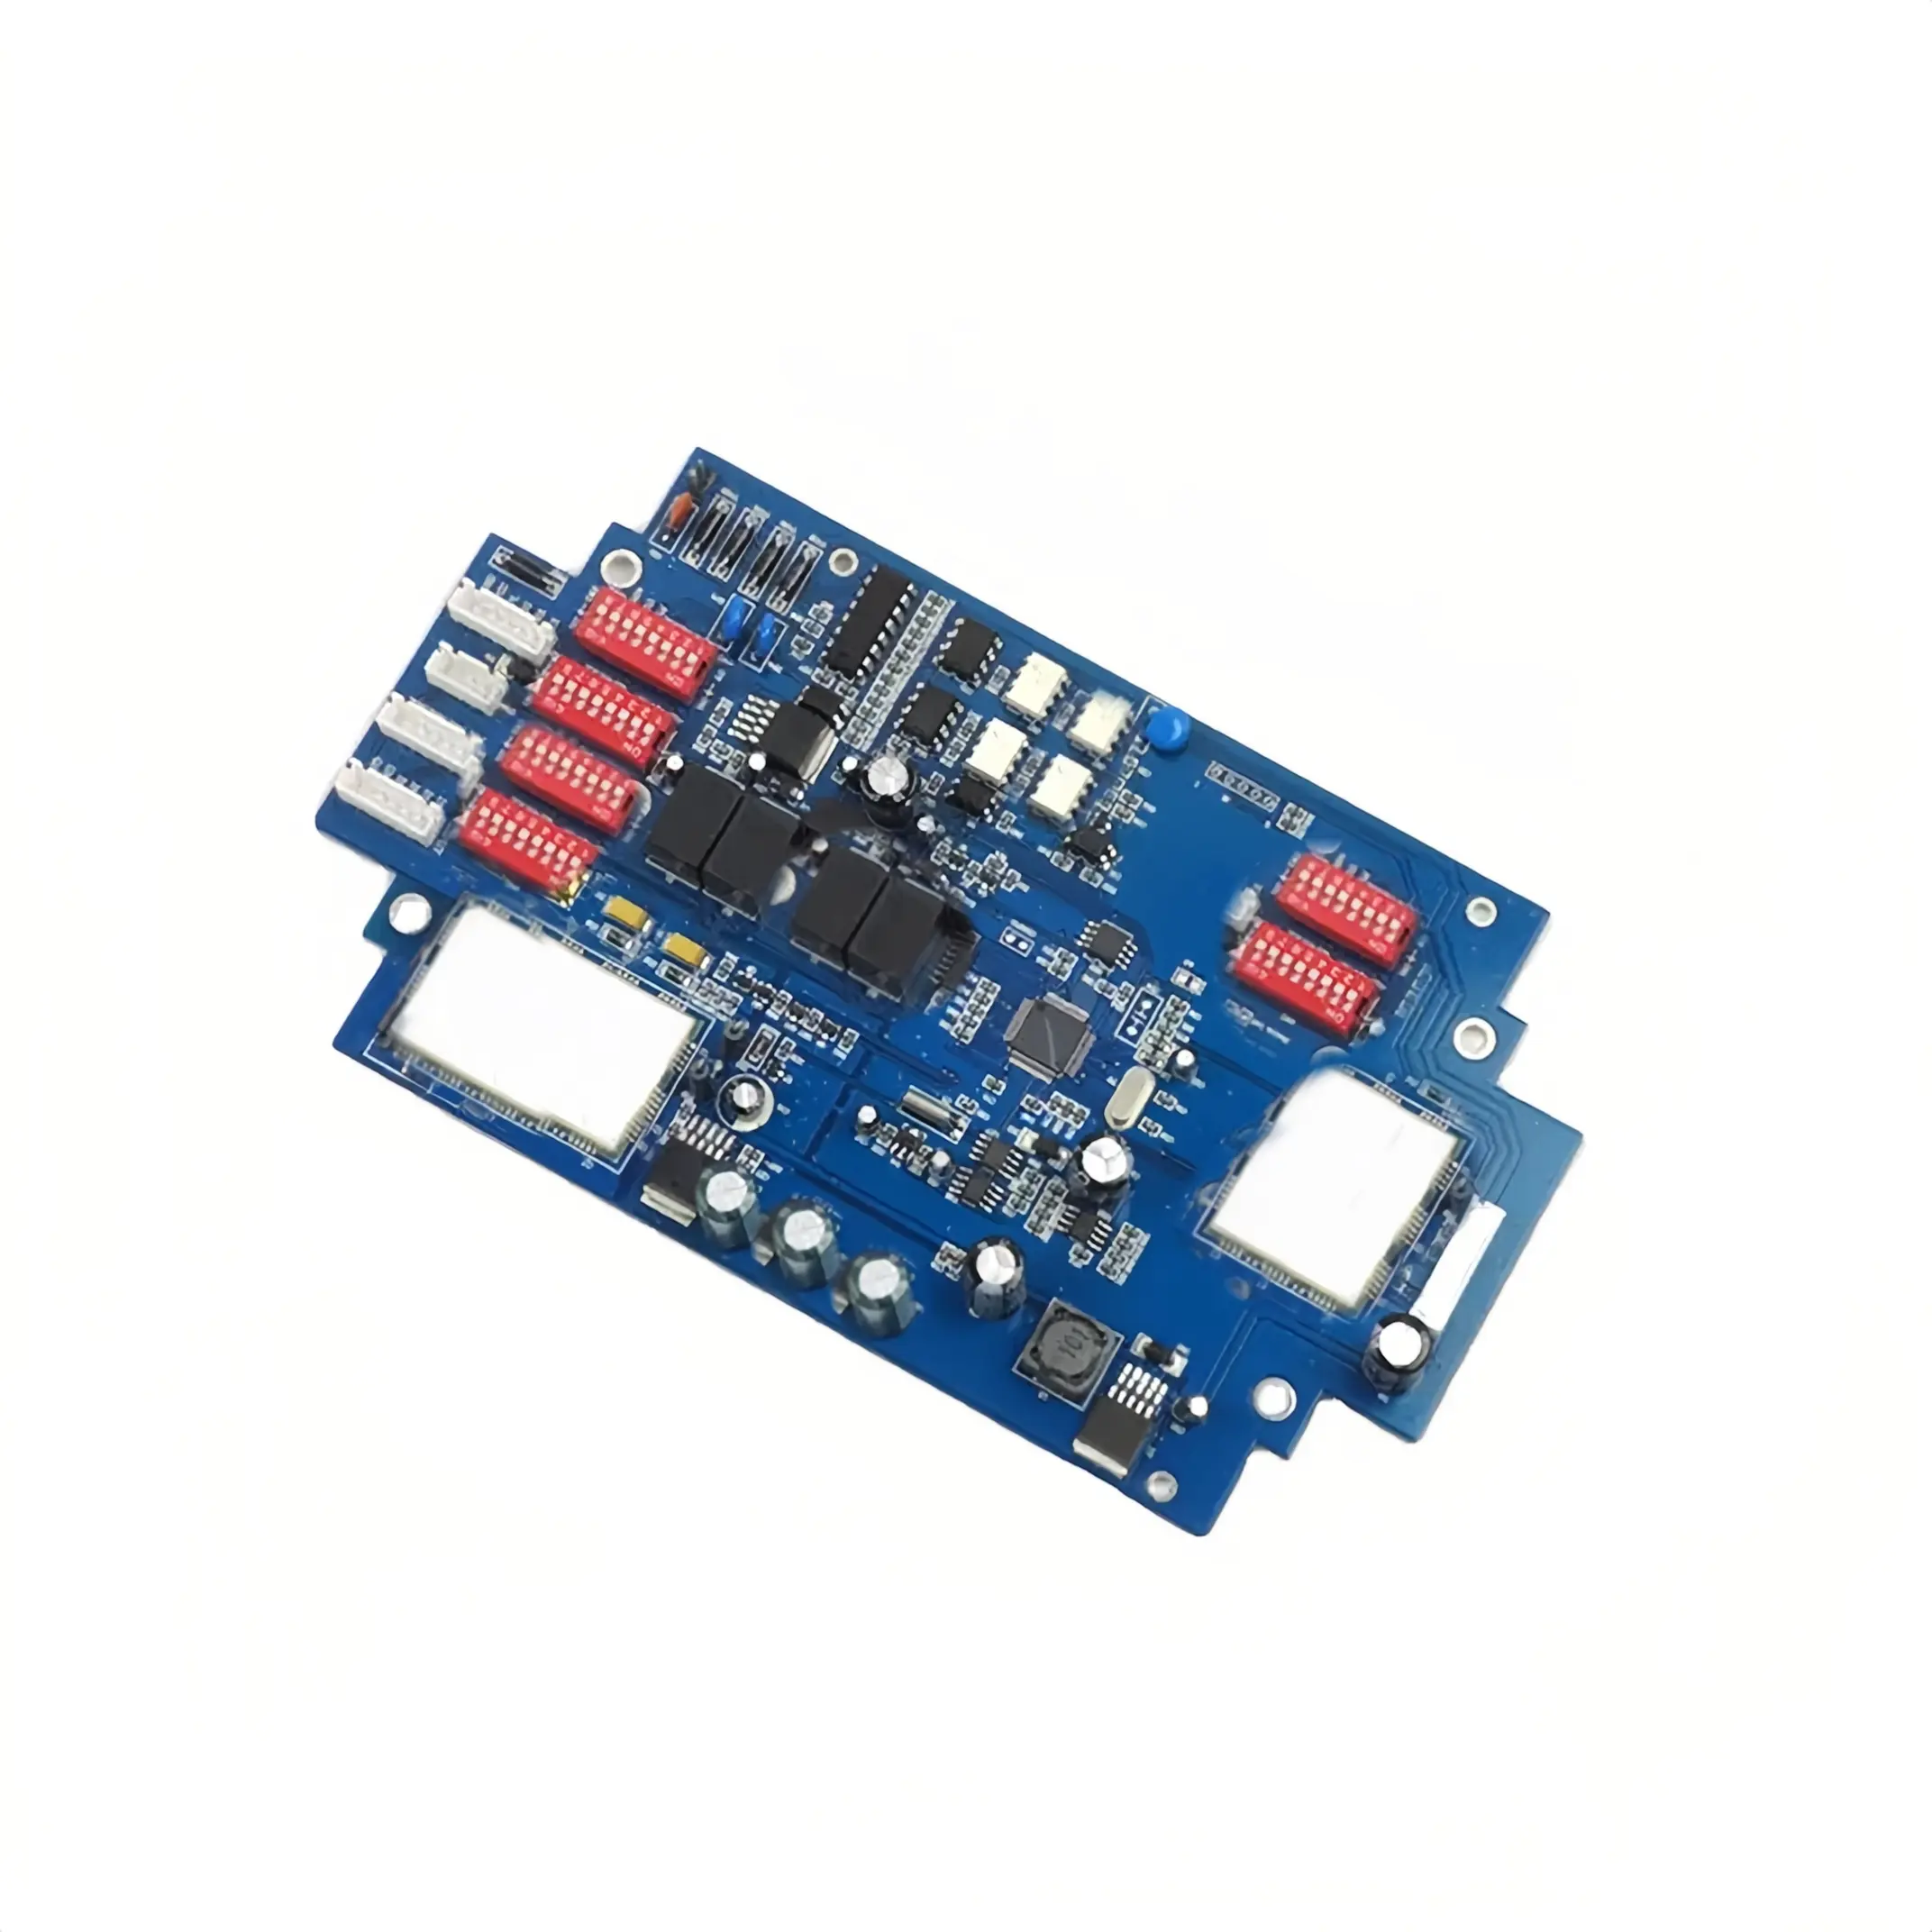 Placa de circuito Pcba electrónica personalizada, fabricante de placa de circuito de Dron, servicio de montaje de Pcb